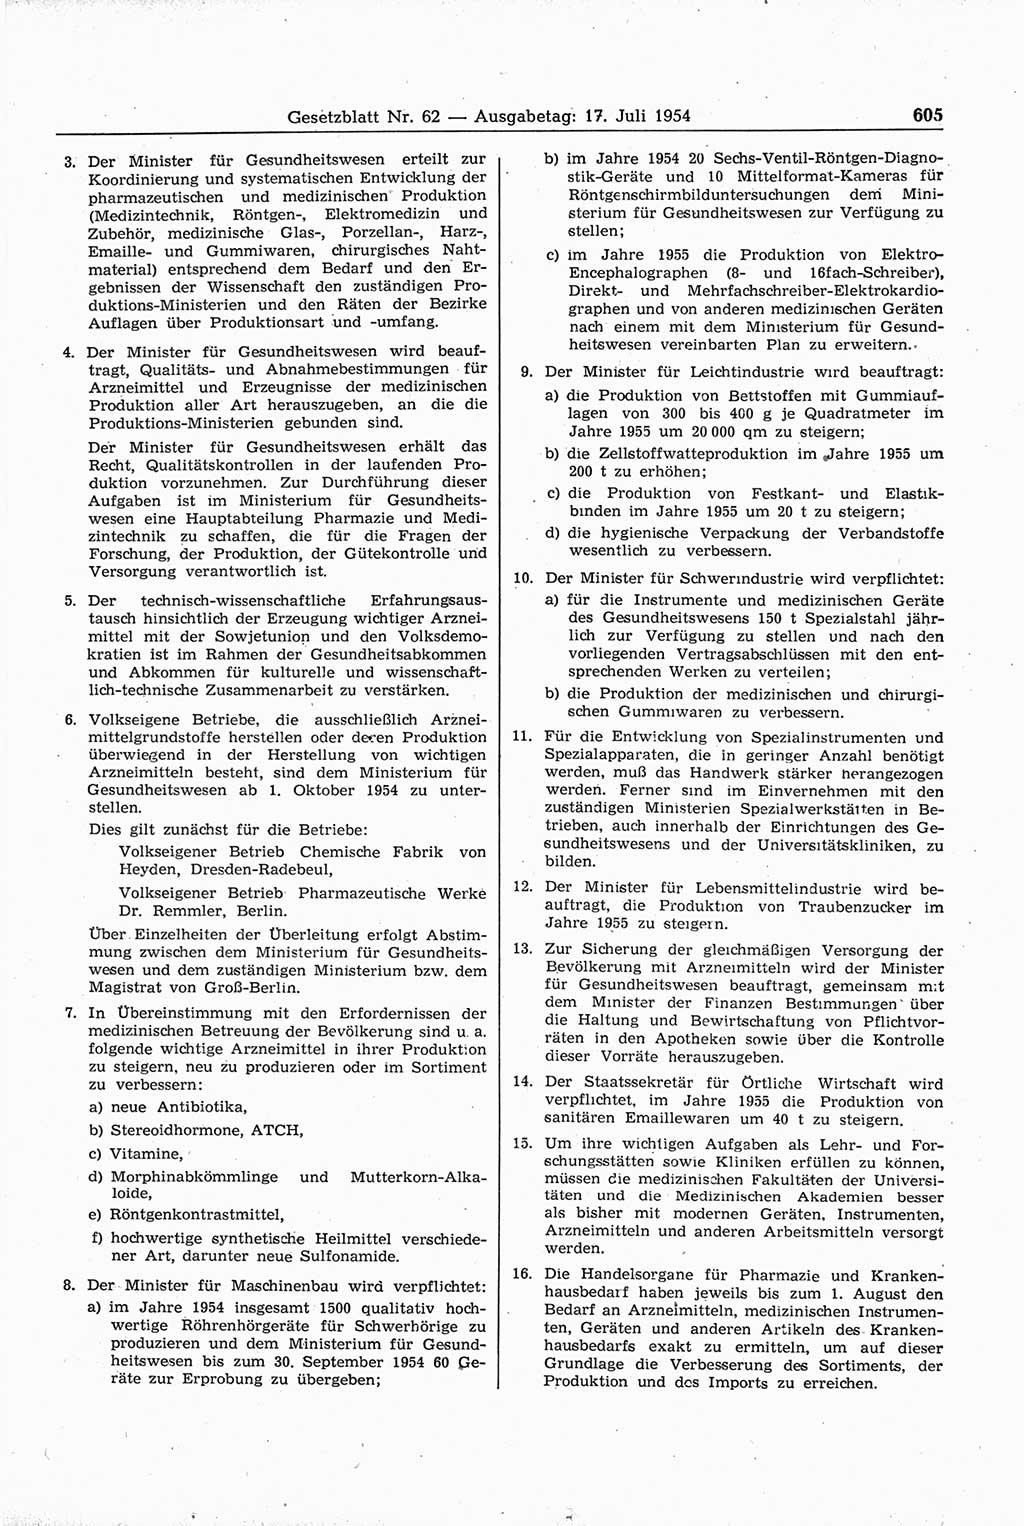 Gesetzblatt (GBl.) der Deutschen Demokratischen Republik (DDR) 1954, Seite 605 (GBl. DDR 1954, S. 605)